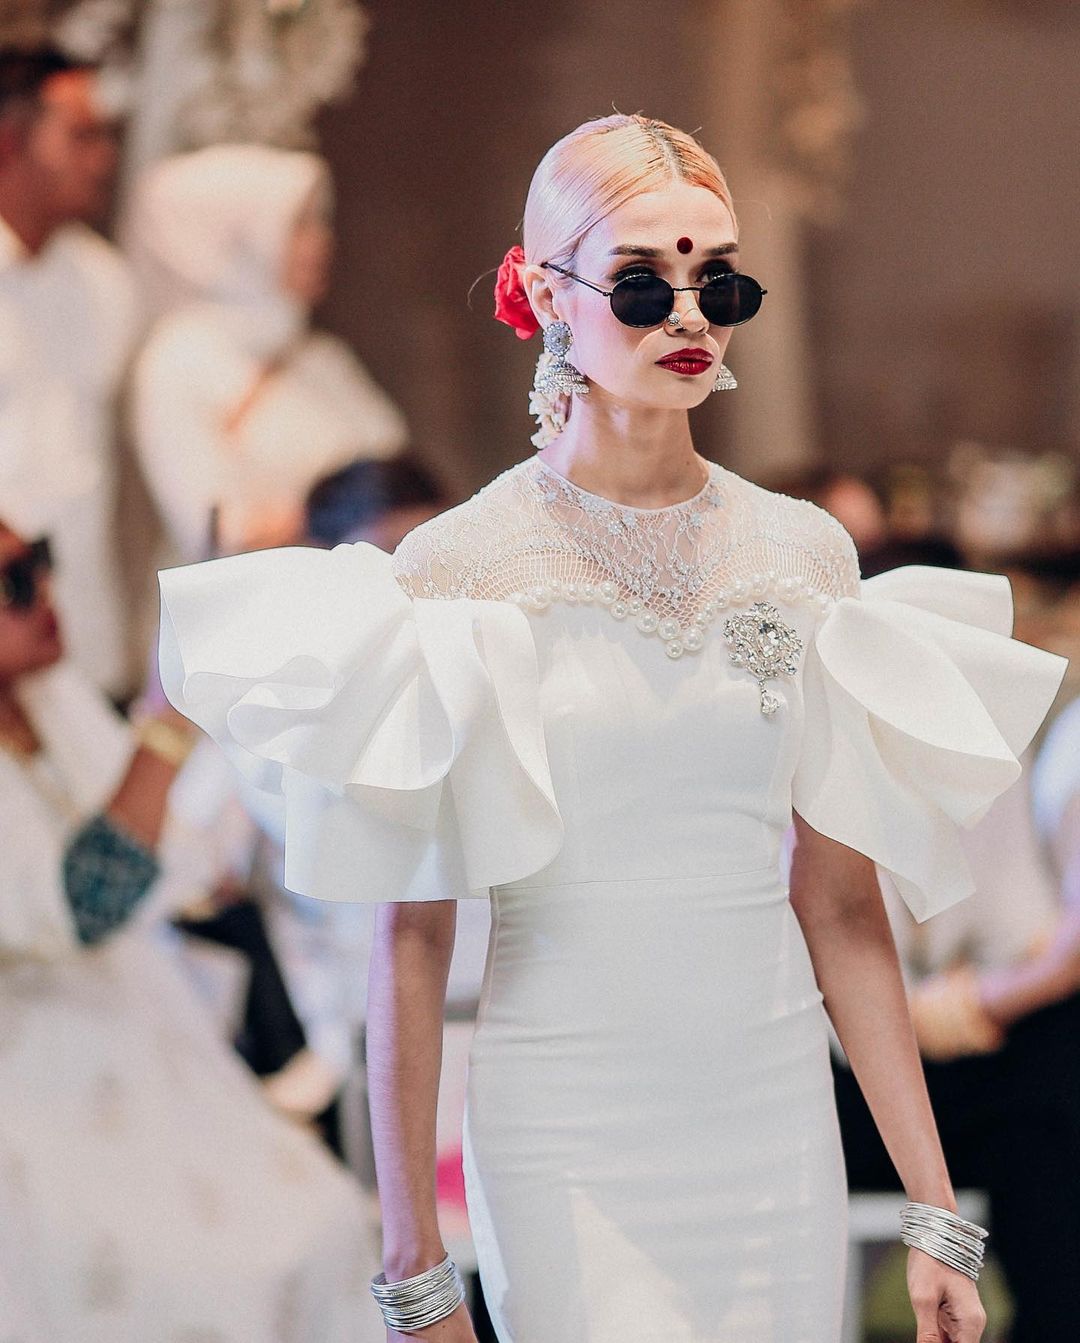 Alia Gangubai's inspired look at the Malaysia Fashion Show.